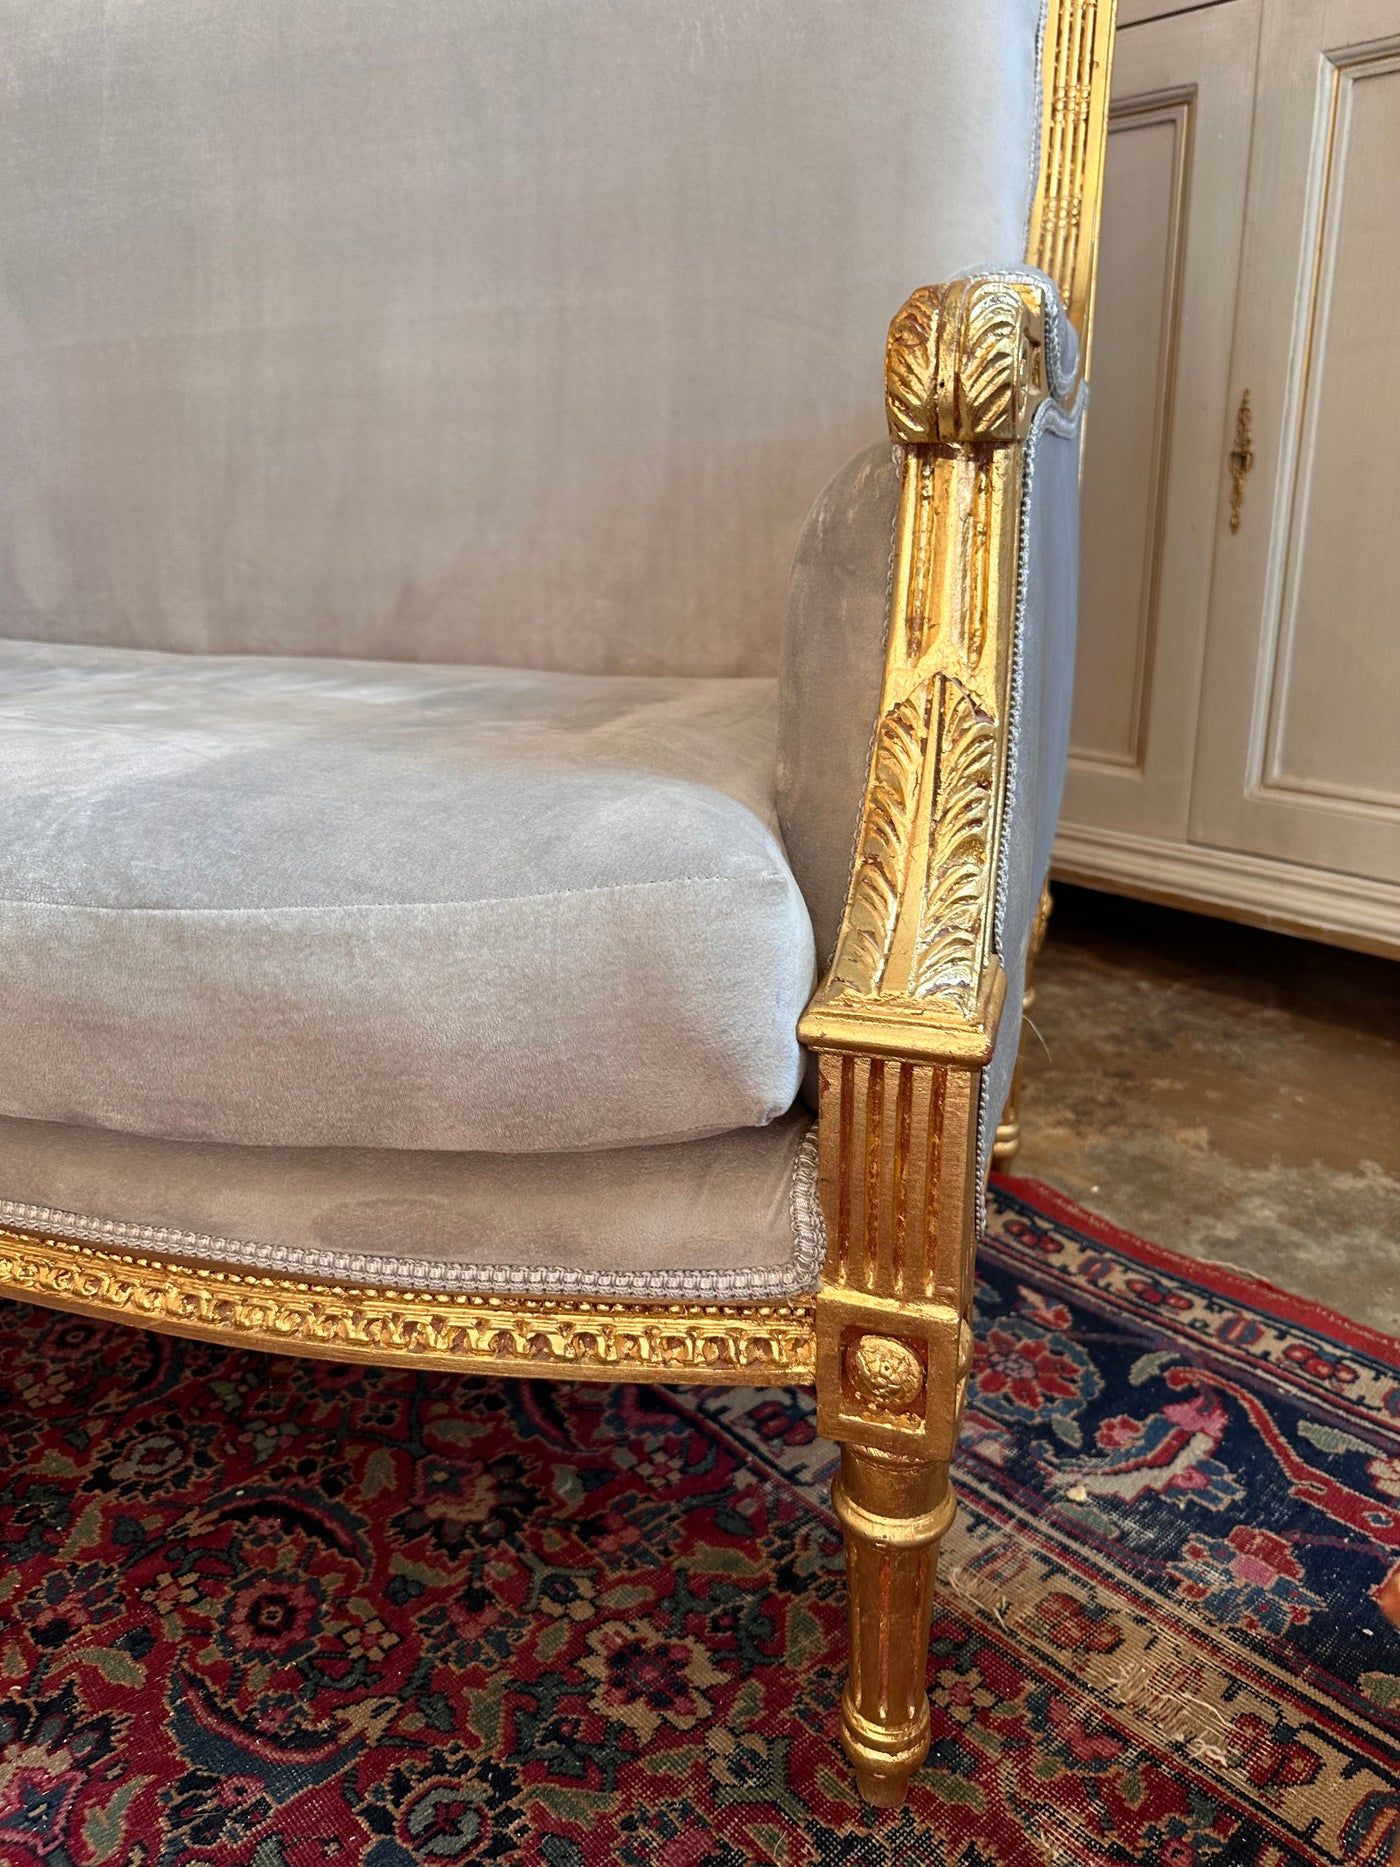 Square Back Louis XVI Sofa in Soft Lavender